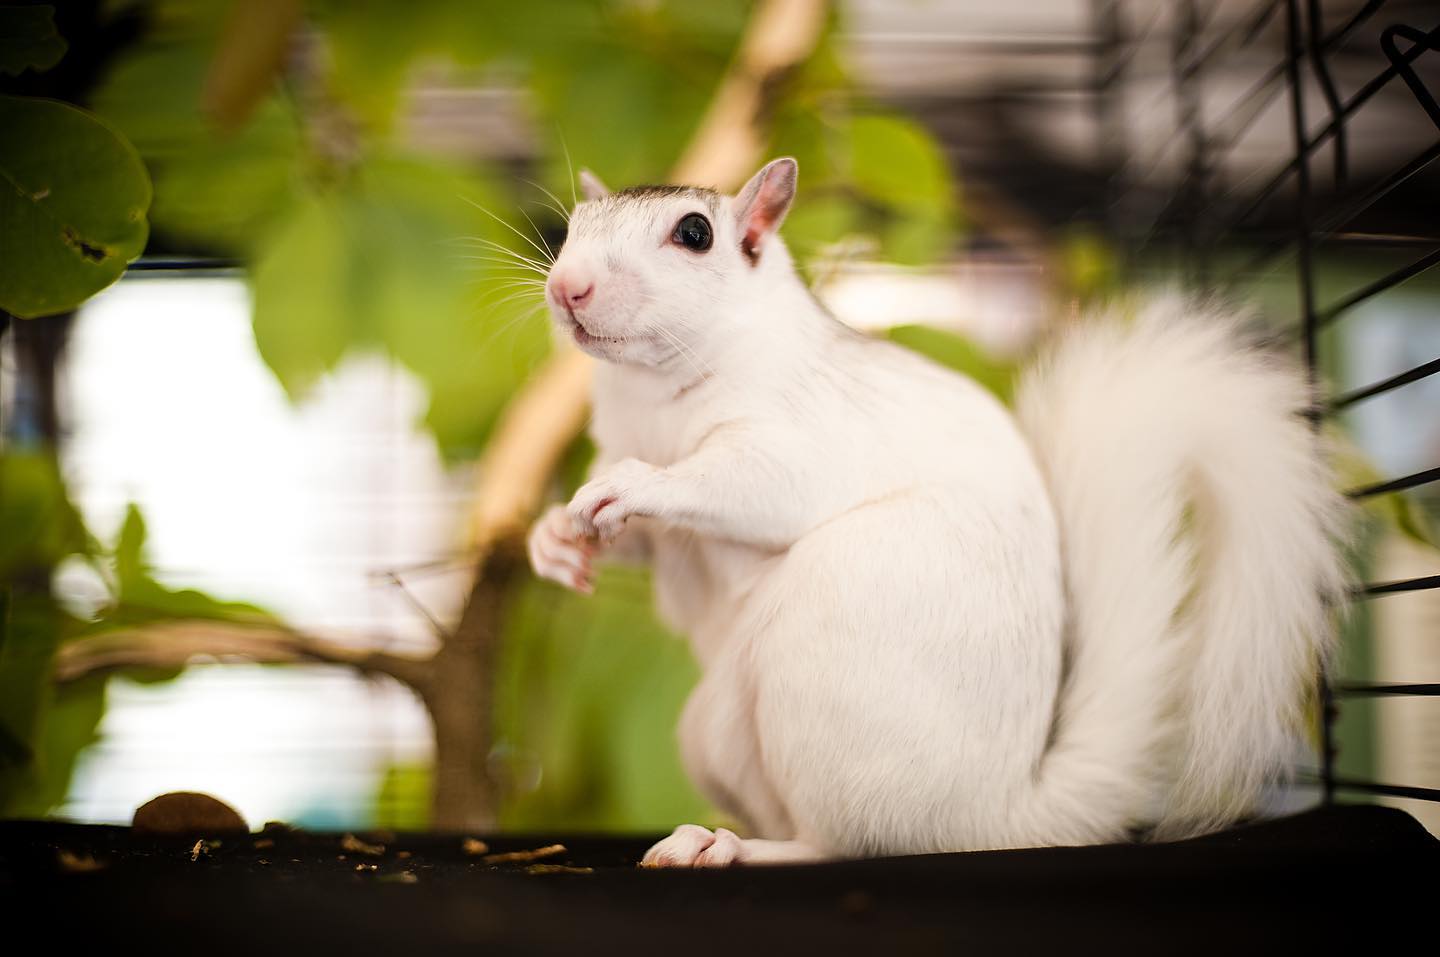 Brevard, North Carolina’s White Squirrel Says Winter Will Continue